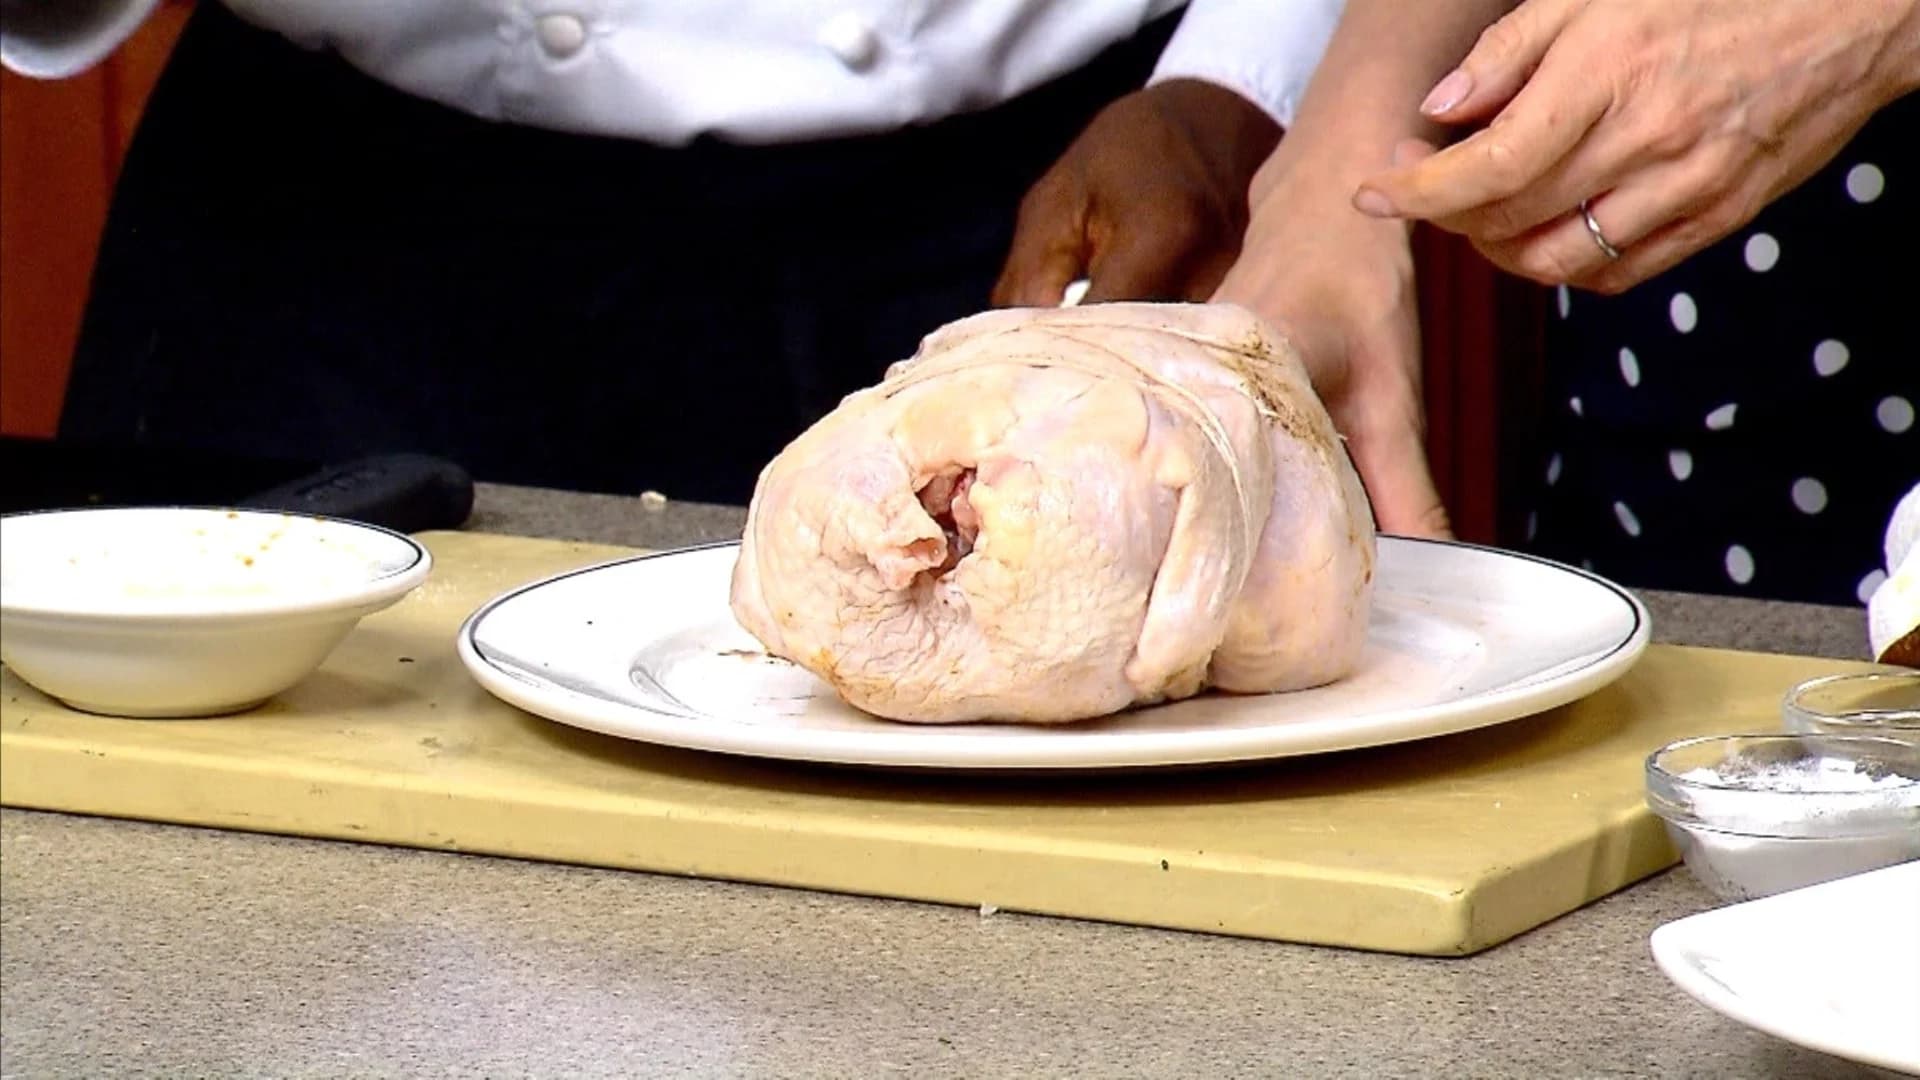 Chef's Quick Tip: Roast chicken